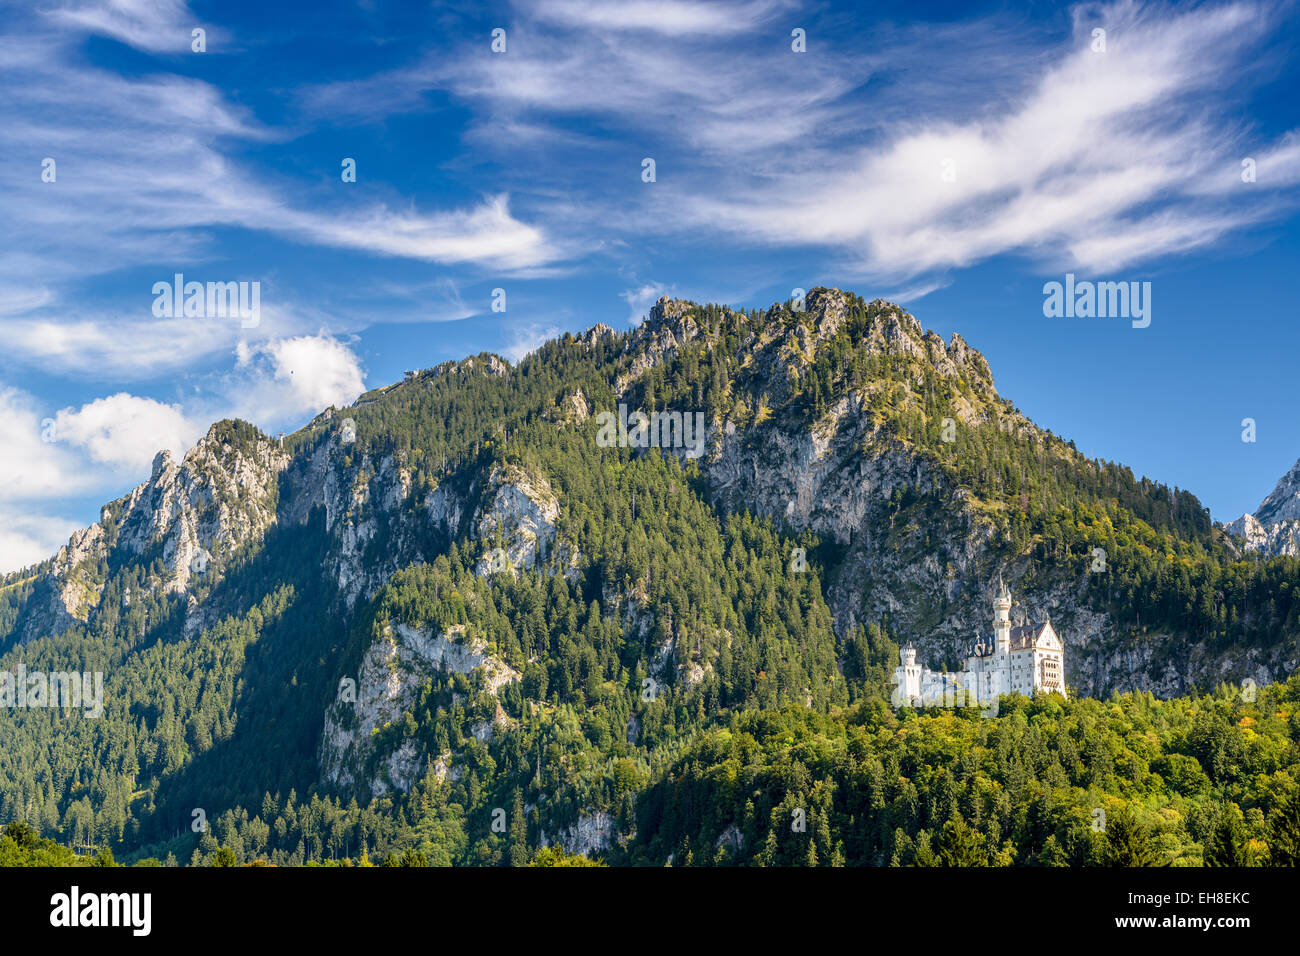 El castillo de Neuschwanstein en los Alpes bávaros de Alemania. Foto de stock